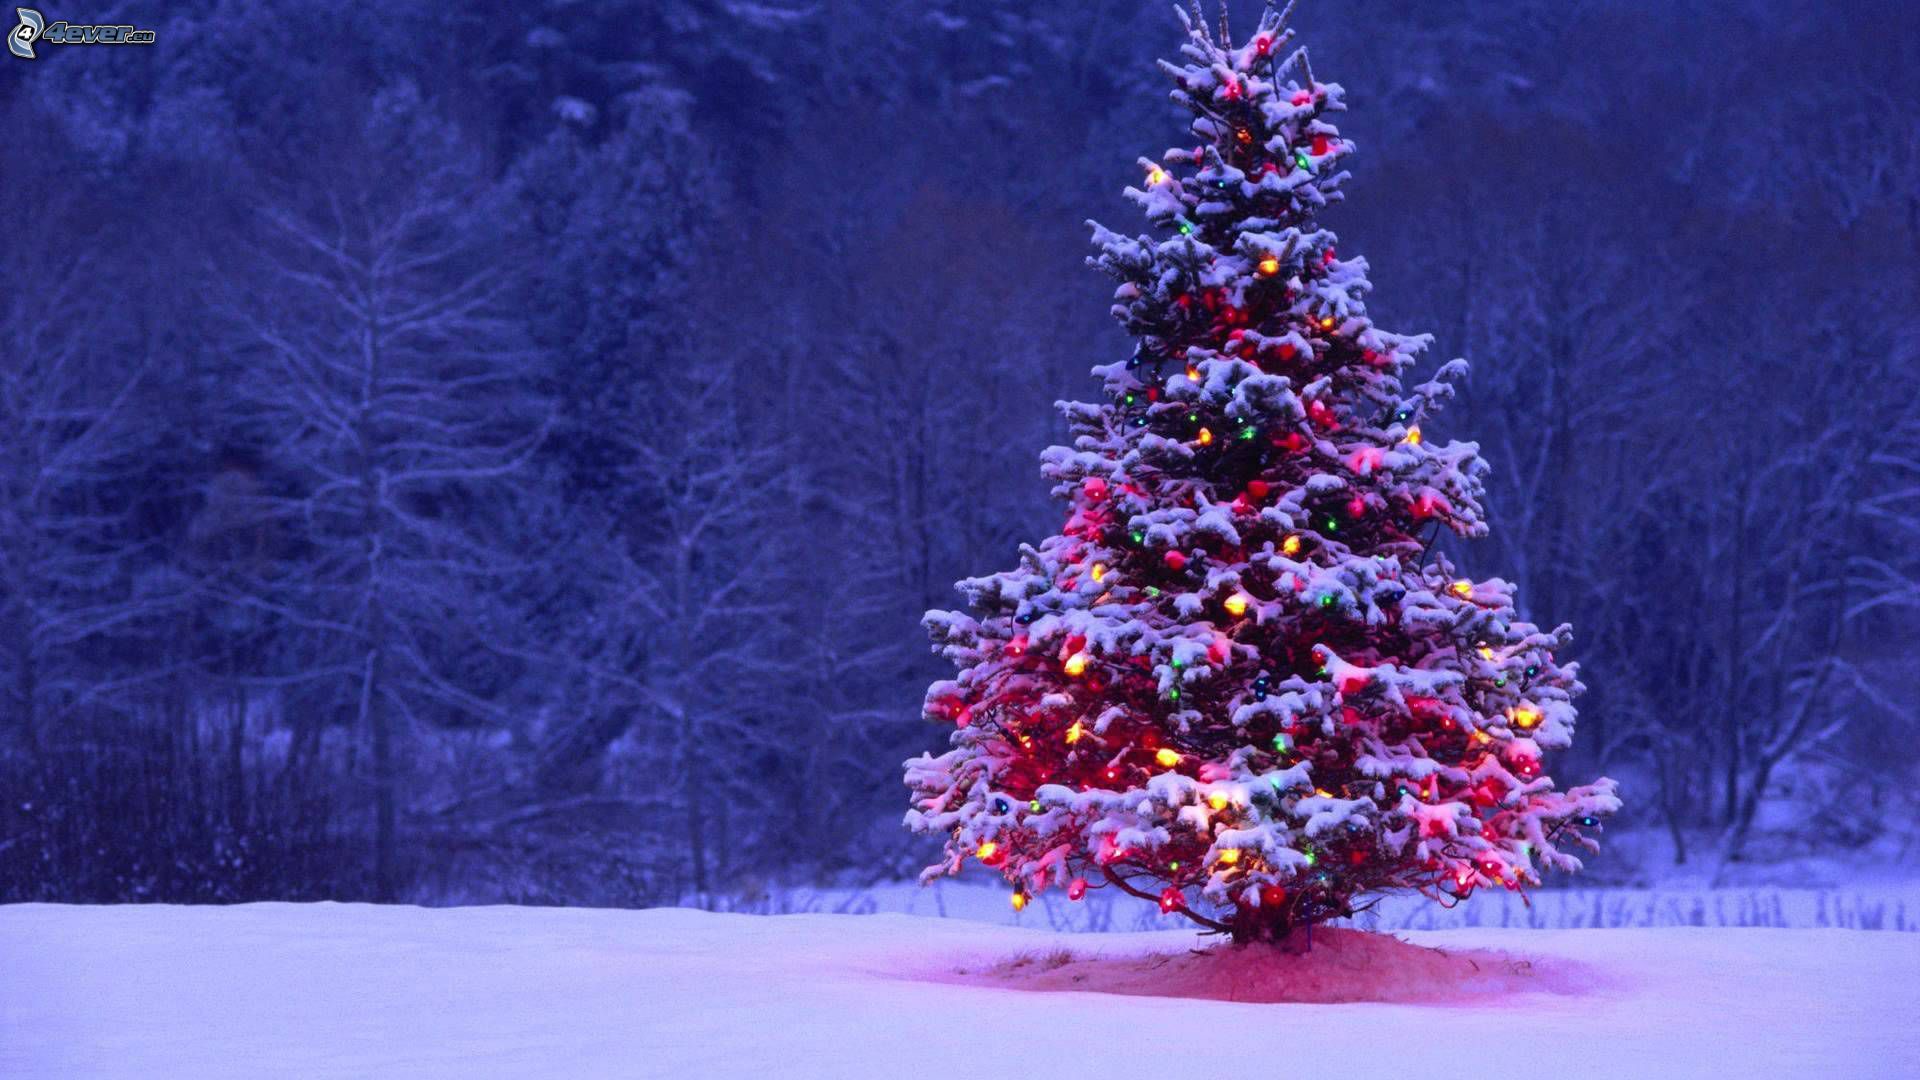  Weihnachtsbaum Hintergrundbild 1920x1080. Weihnachtsbaum